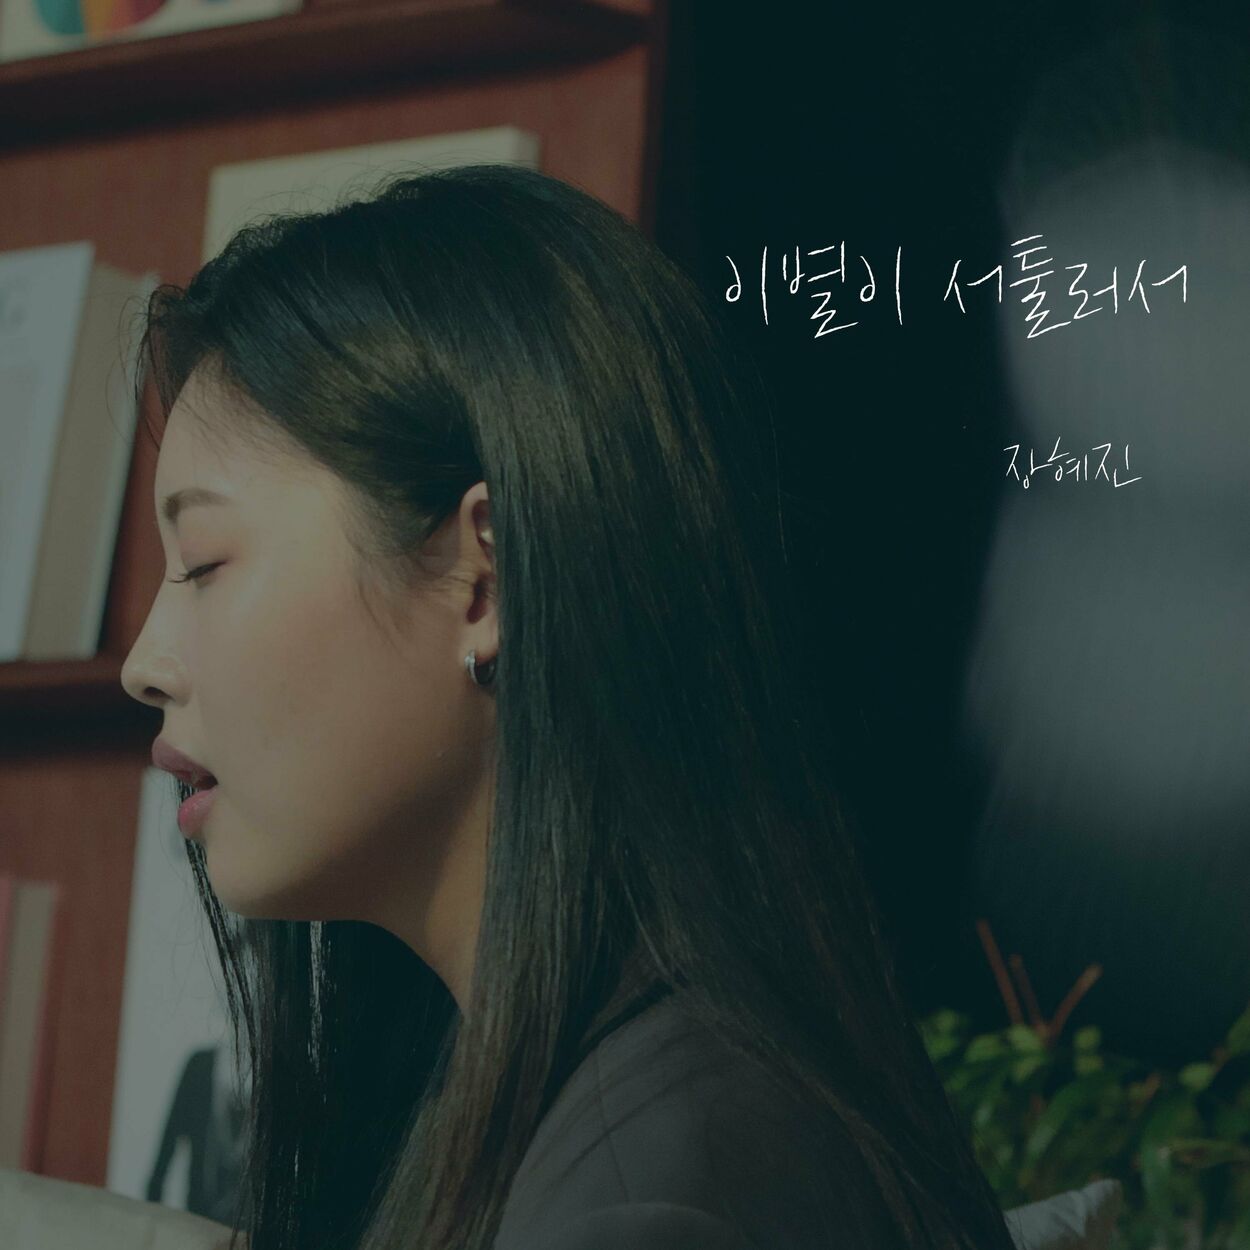 Hyejin Jang – Not good at goodbyes – Single